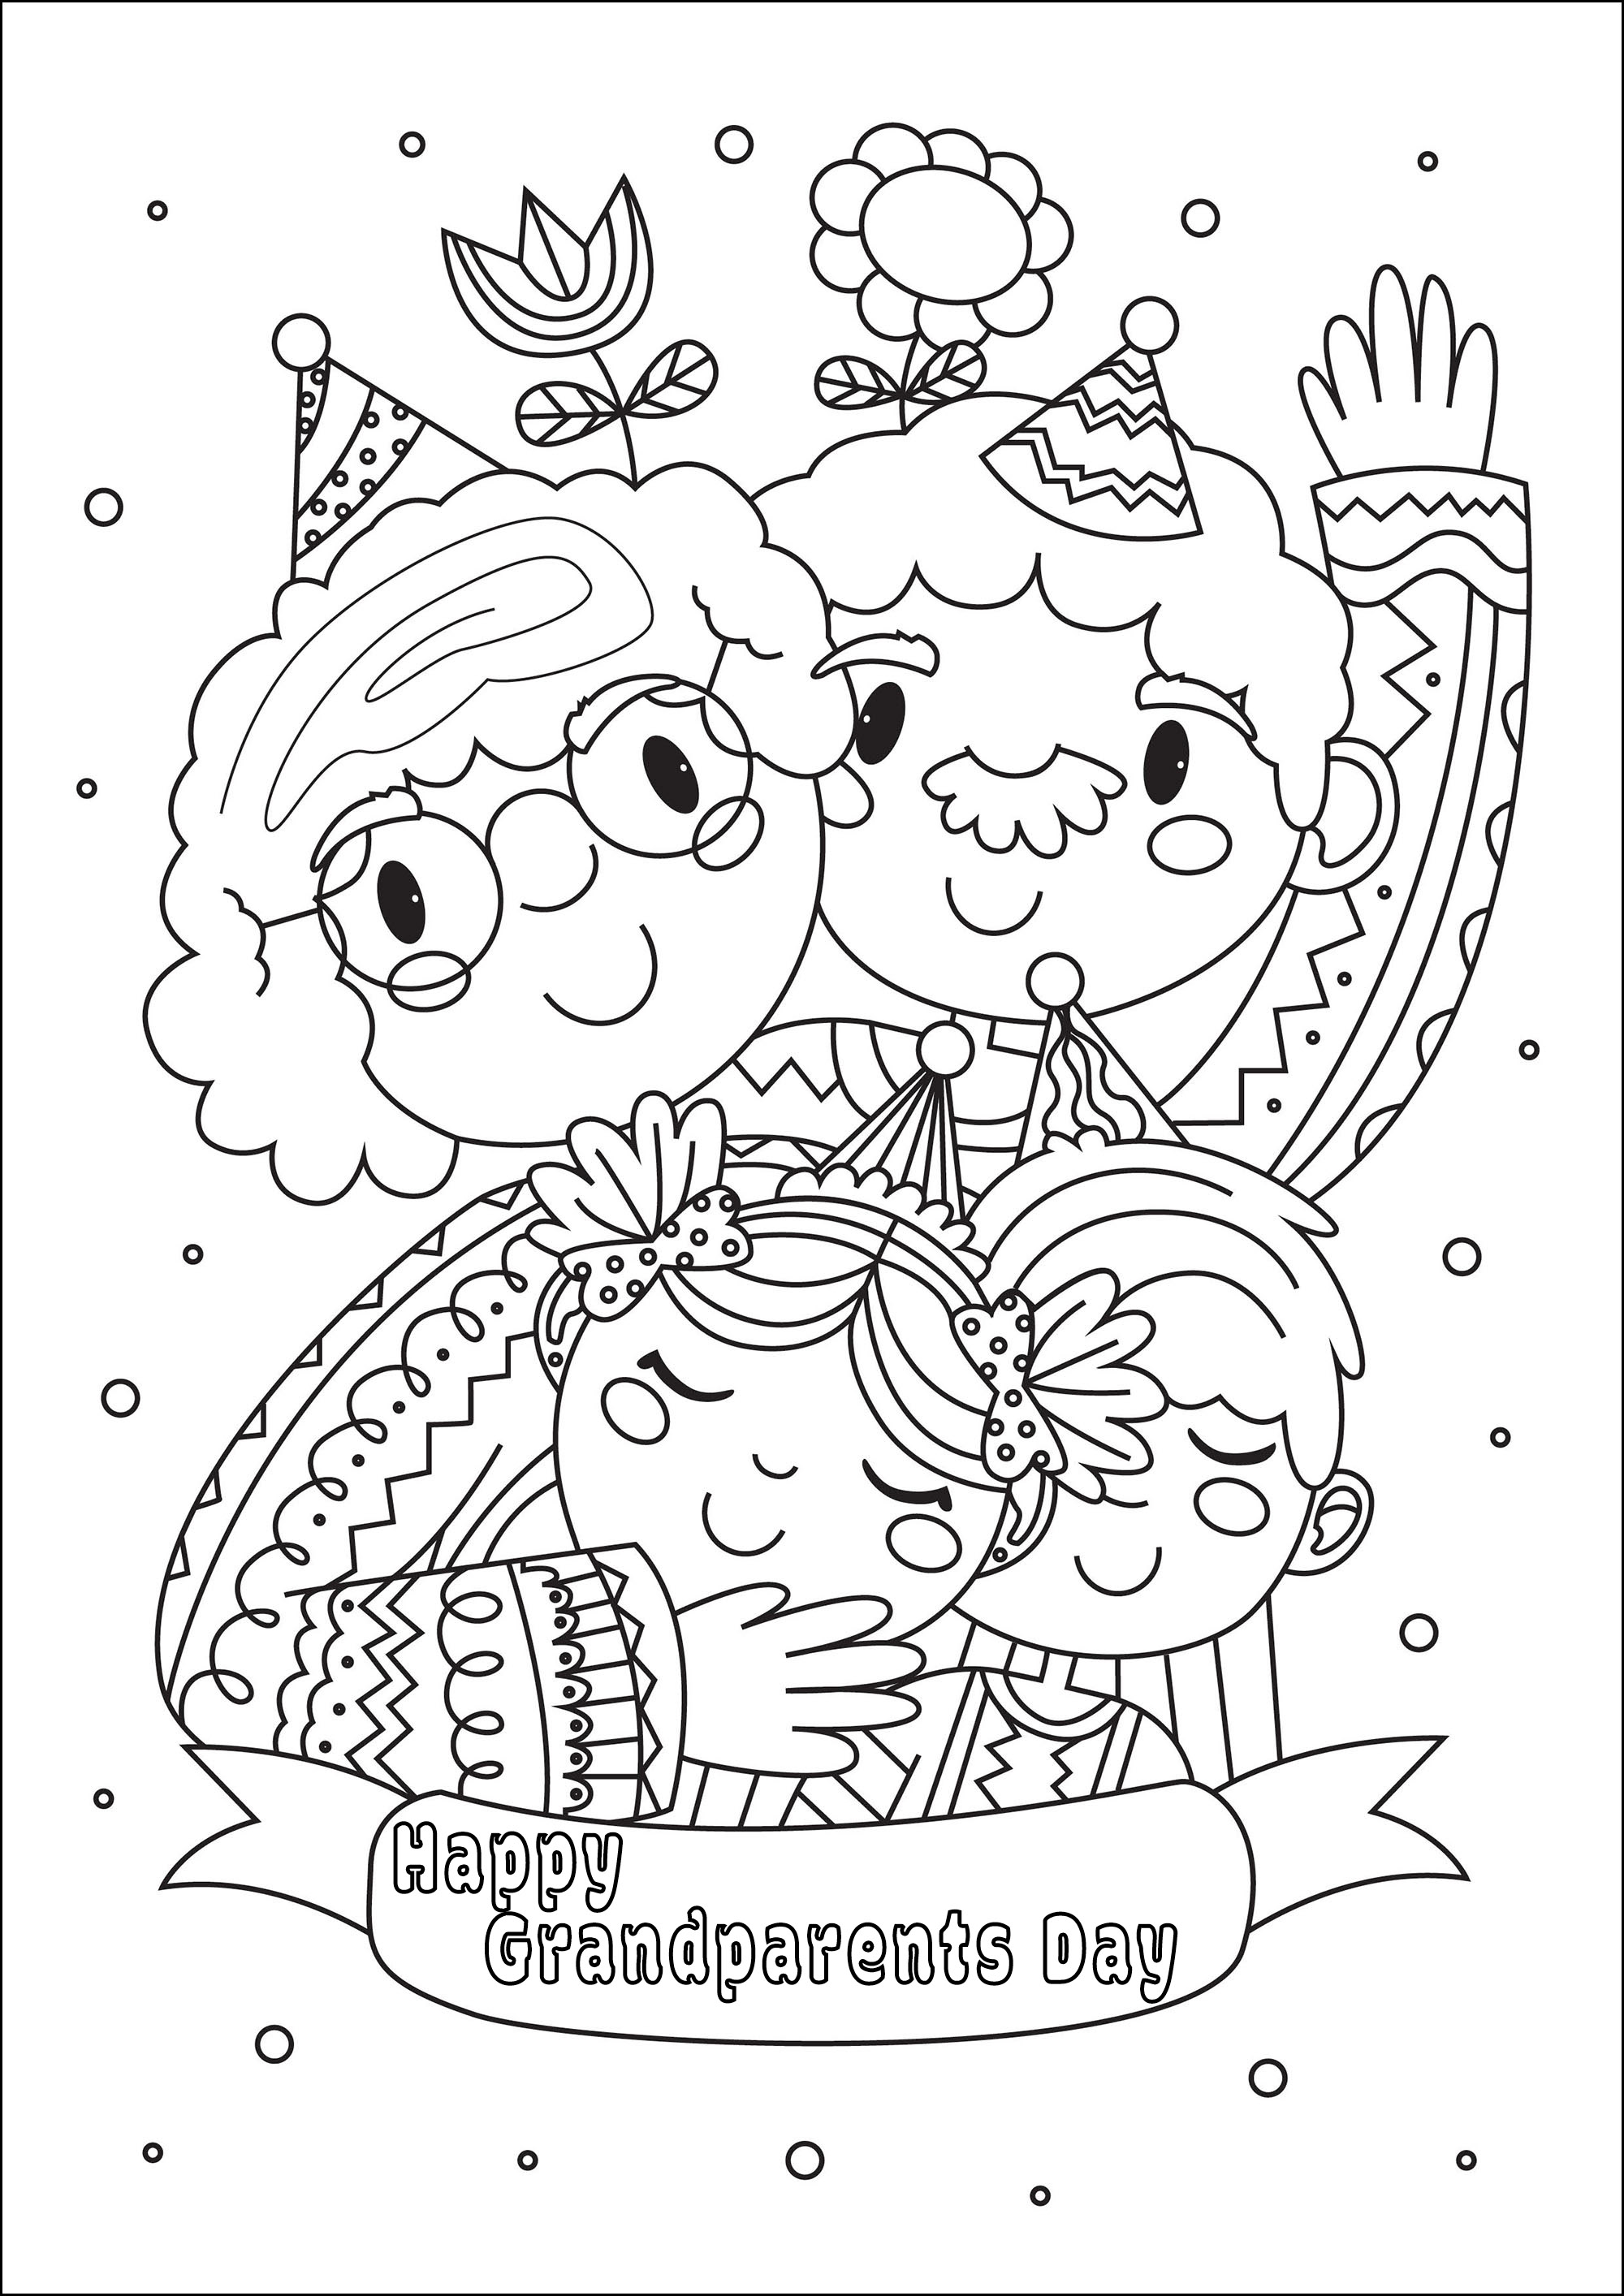 Colorir para o dia dos avós. Uma bonita página para colorir com duas crianças, o seu avô e a sua avó, Artista : Gaelle Picard